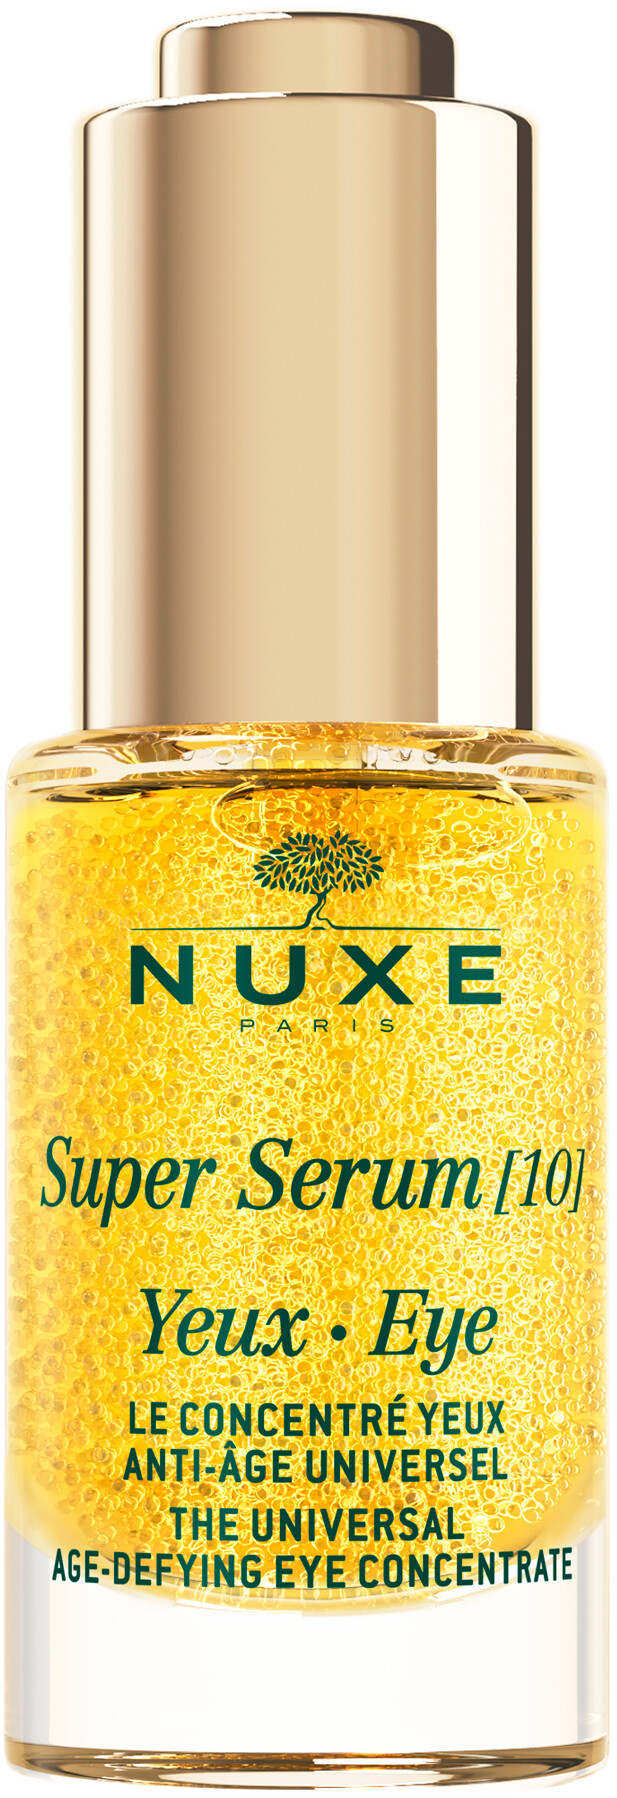 Nuxe Super Serum [10] Eye Contour 15ml